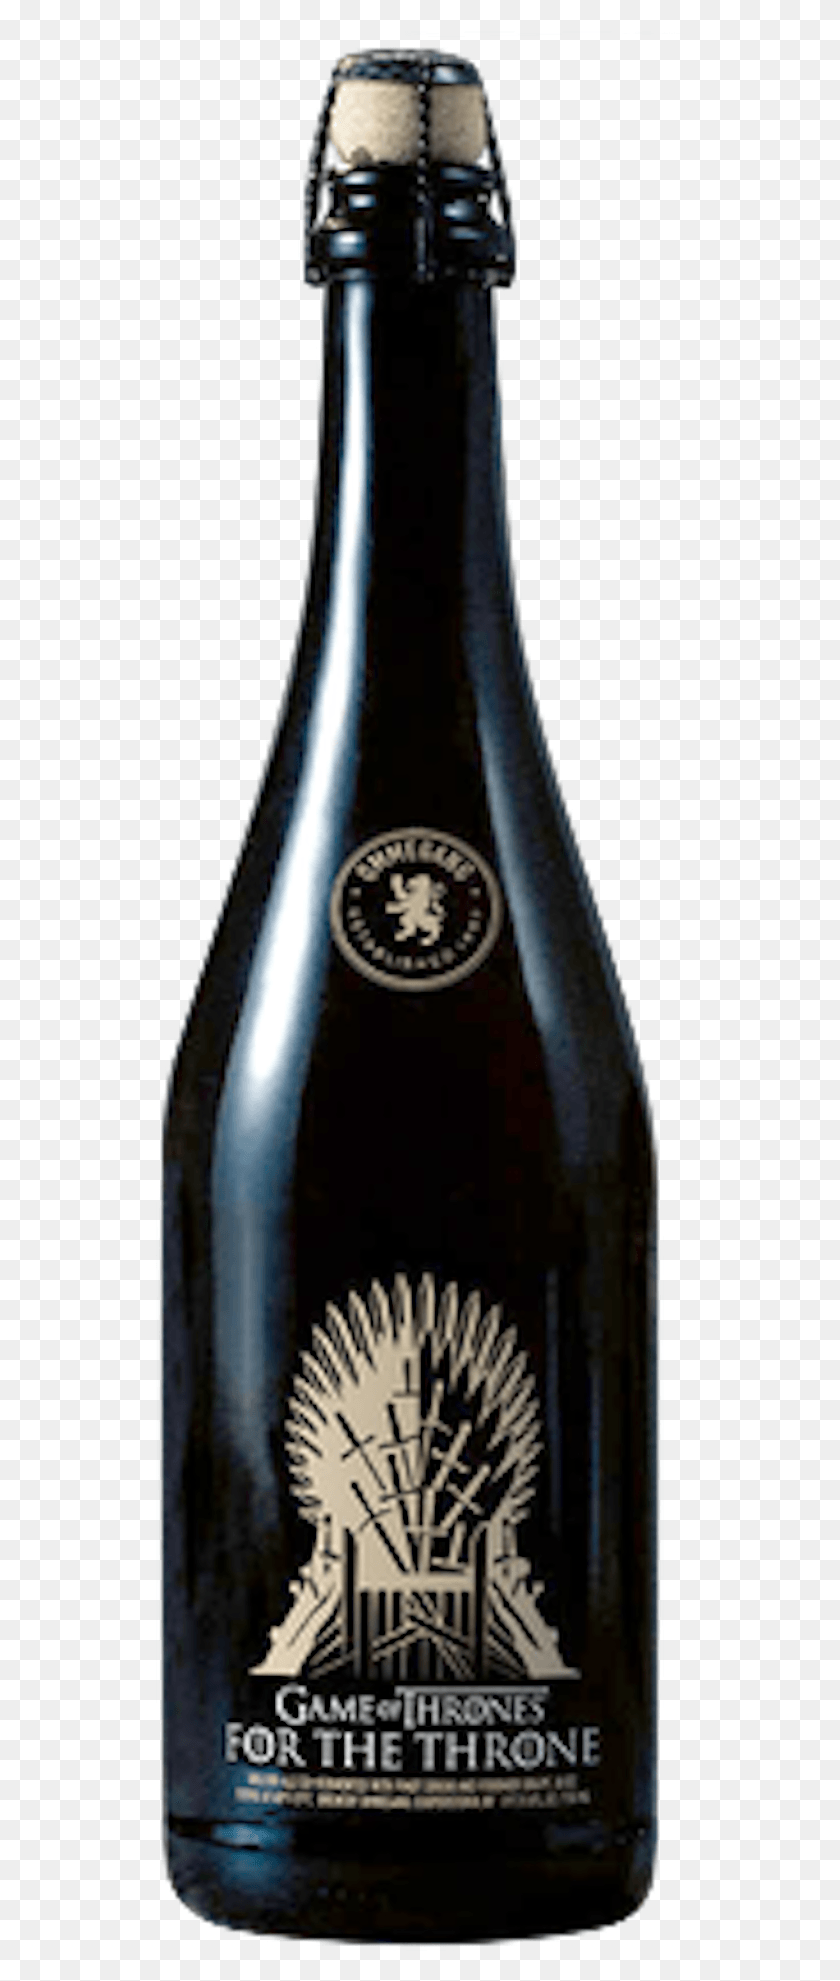 530x1921 Juego De Tronos Golden Ale Got Throne Juego De Tronos Para El Trono Cerveza, Botella, Alcohol, Bebidas Hd Png